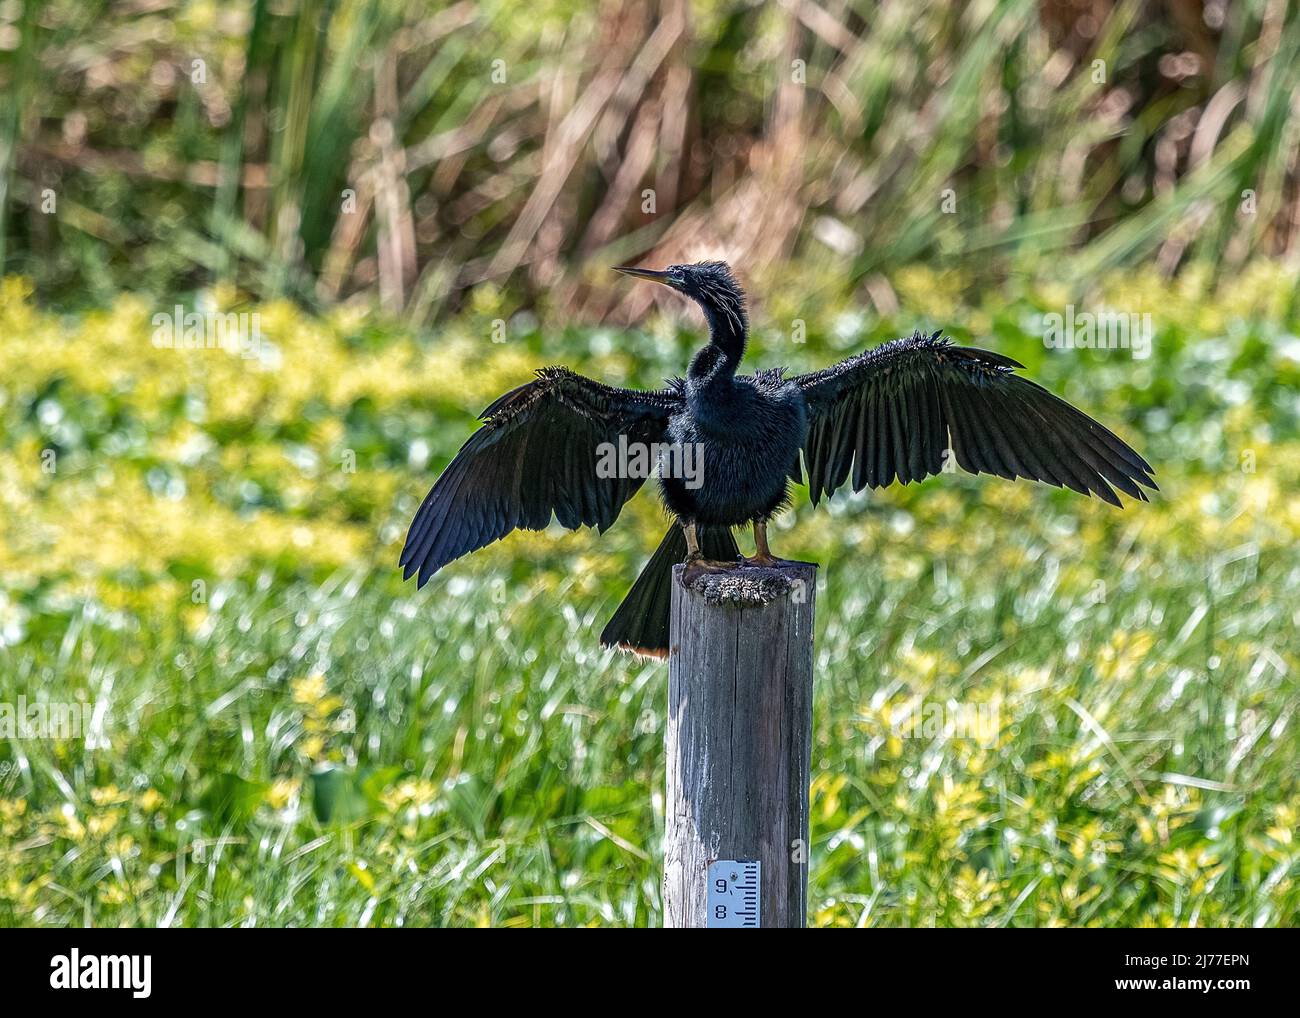 Les Anhingas adultes mâles sont des oiseaux d'eau noirs qui sont souvent vus sécher leurs ailes perchées le long des marais, des rivières, des étangs et de toute autre source d'eau douce Banque D'Images